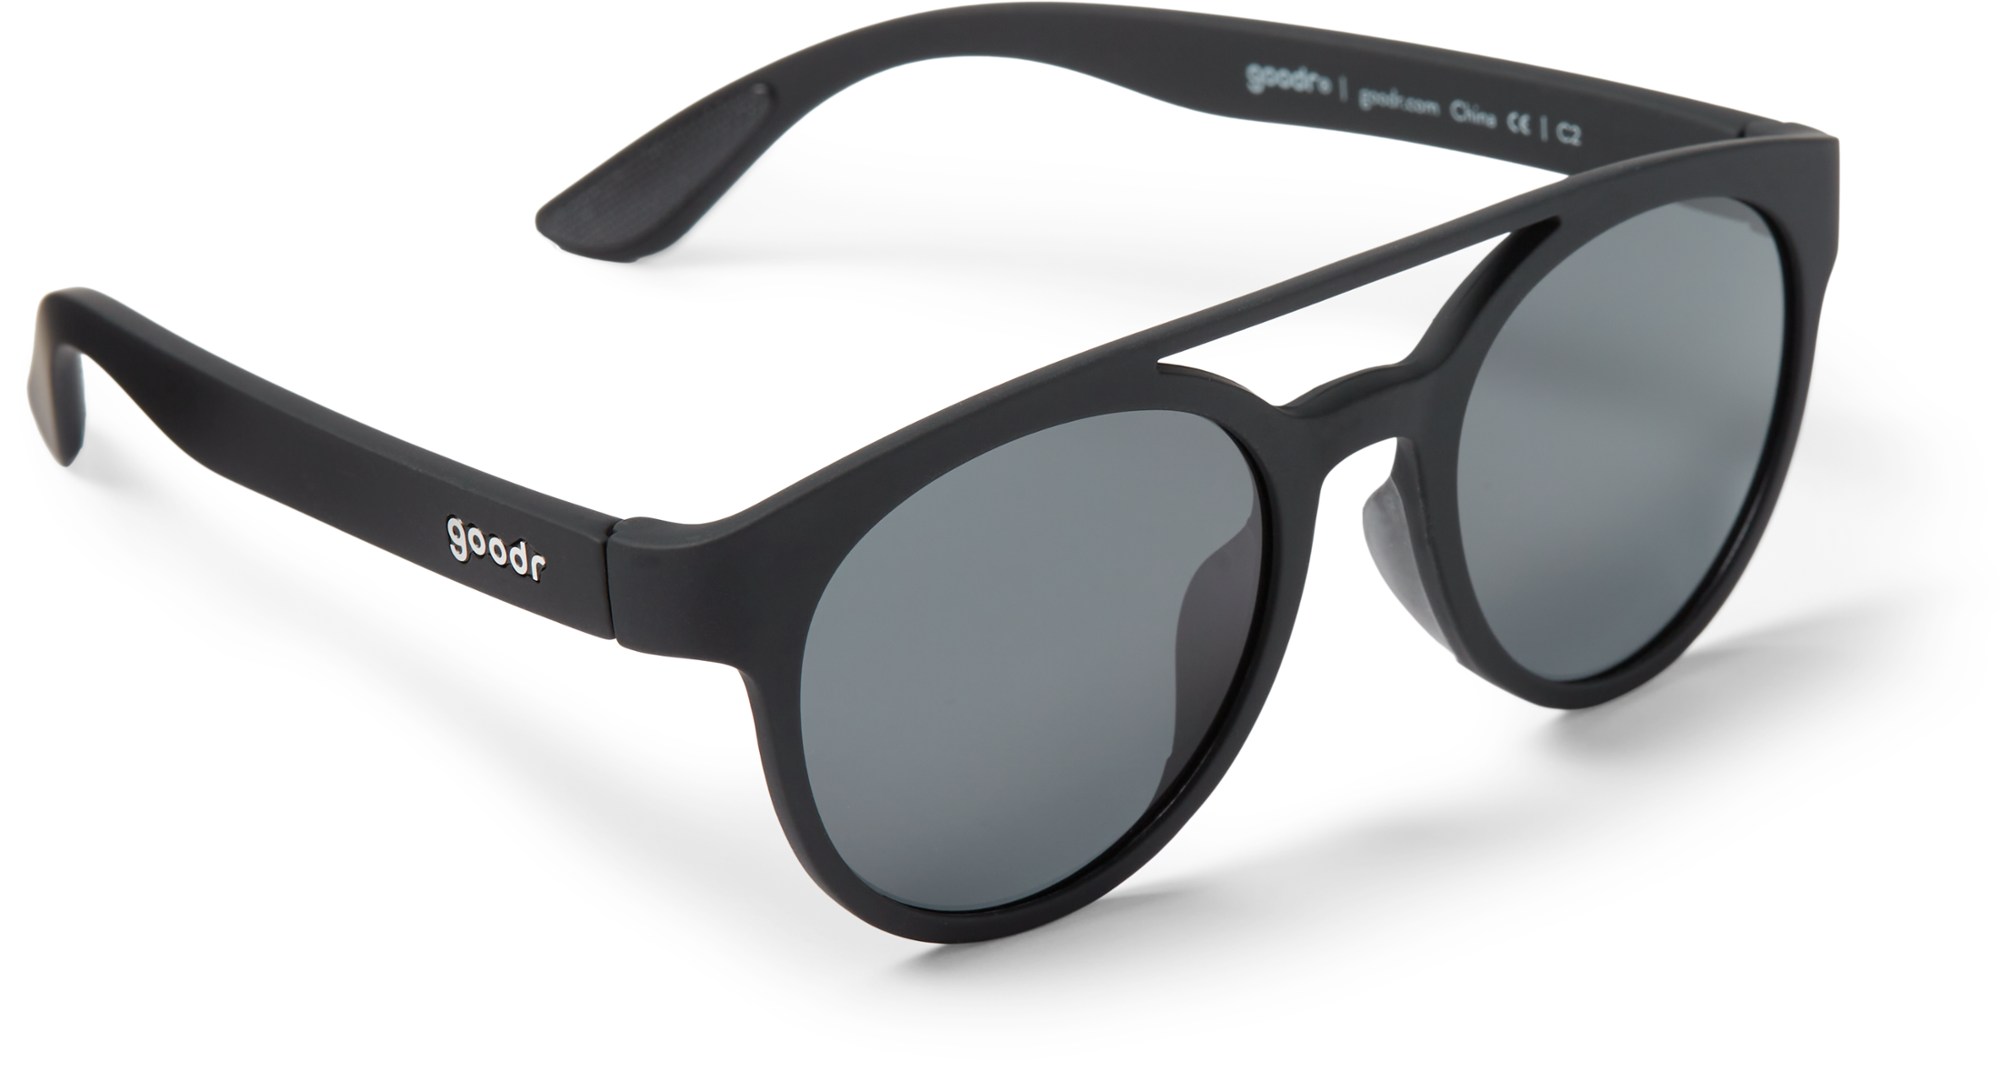 Поляризационные солнцезащитные очки PHG goodr, черный